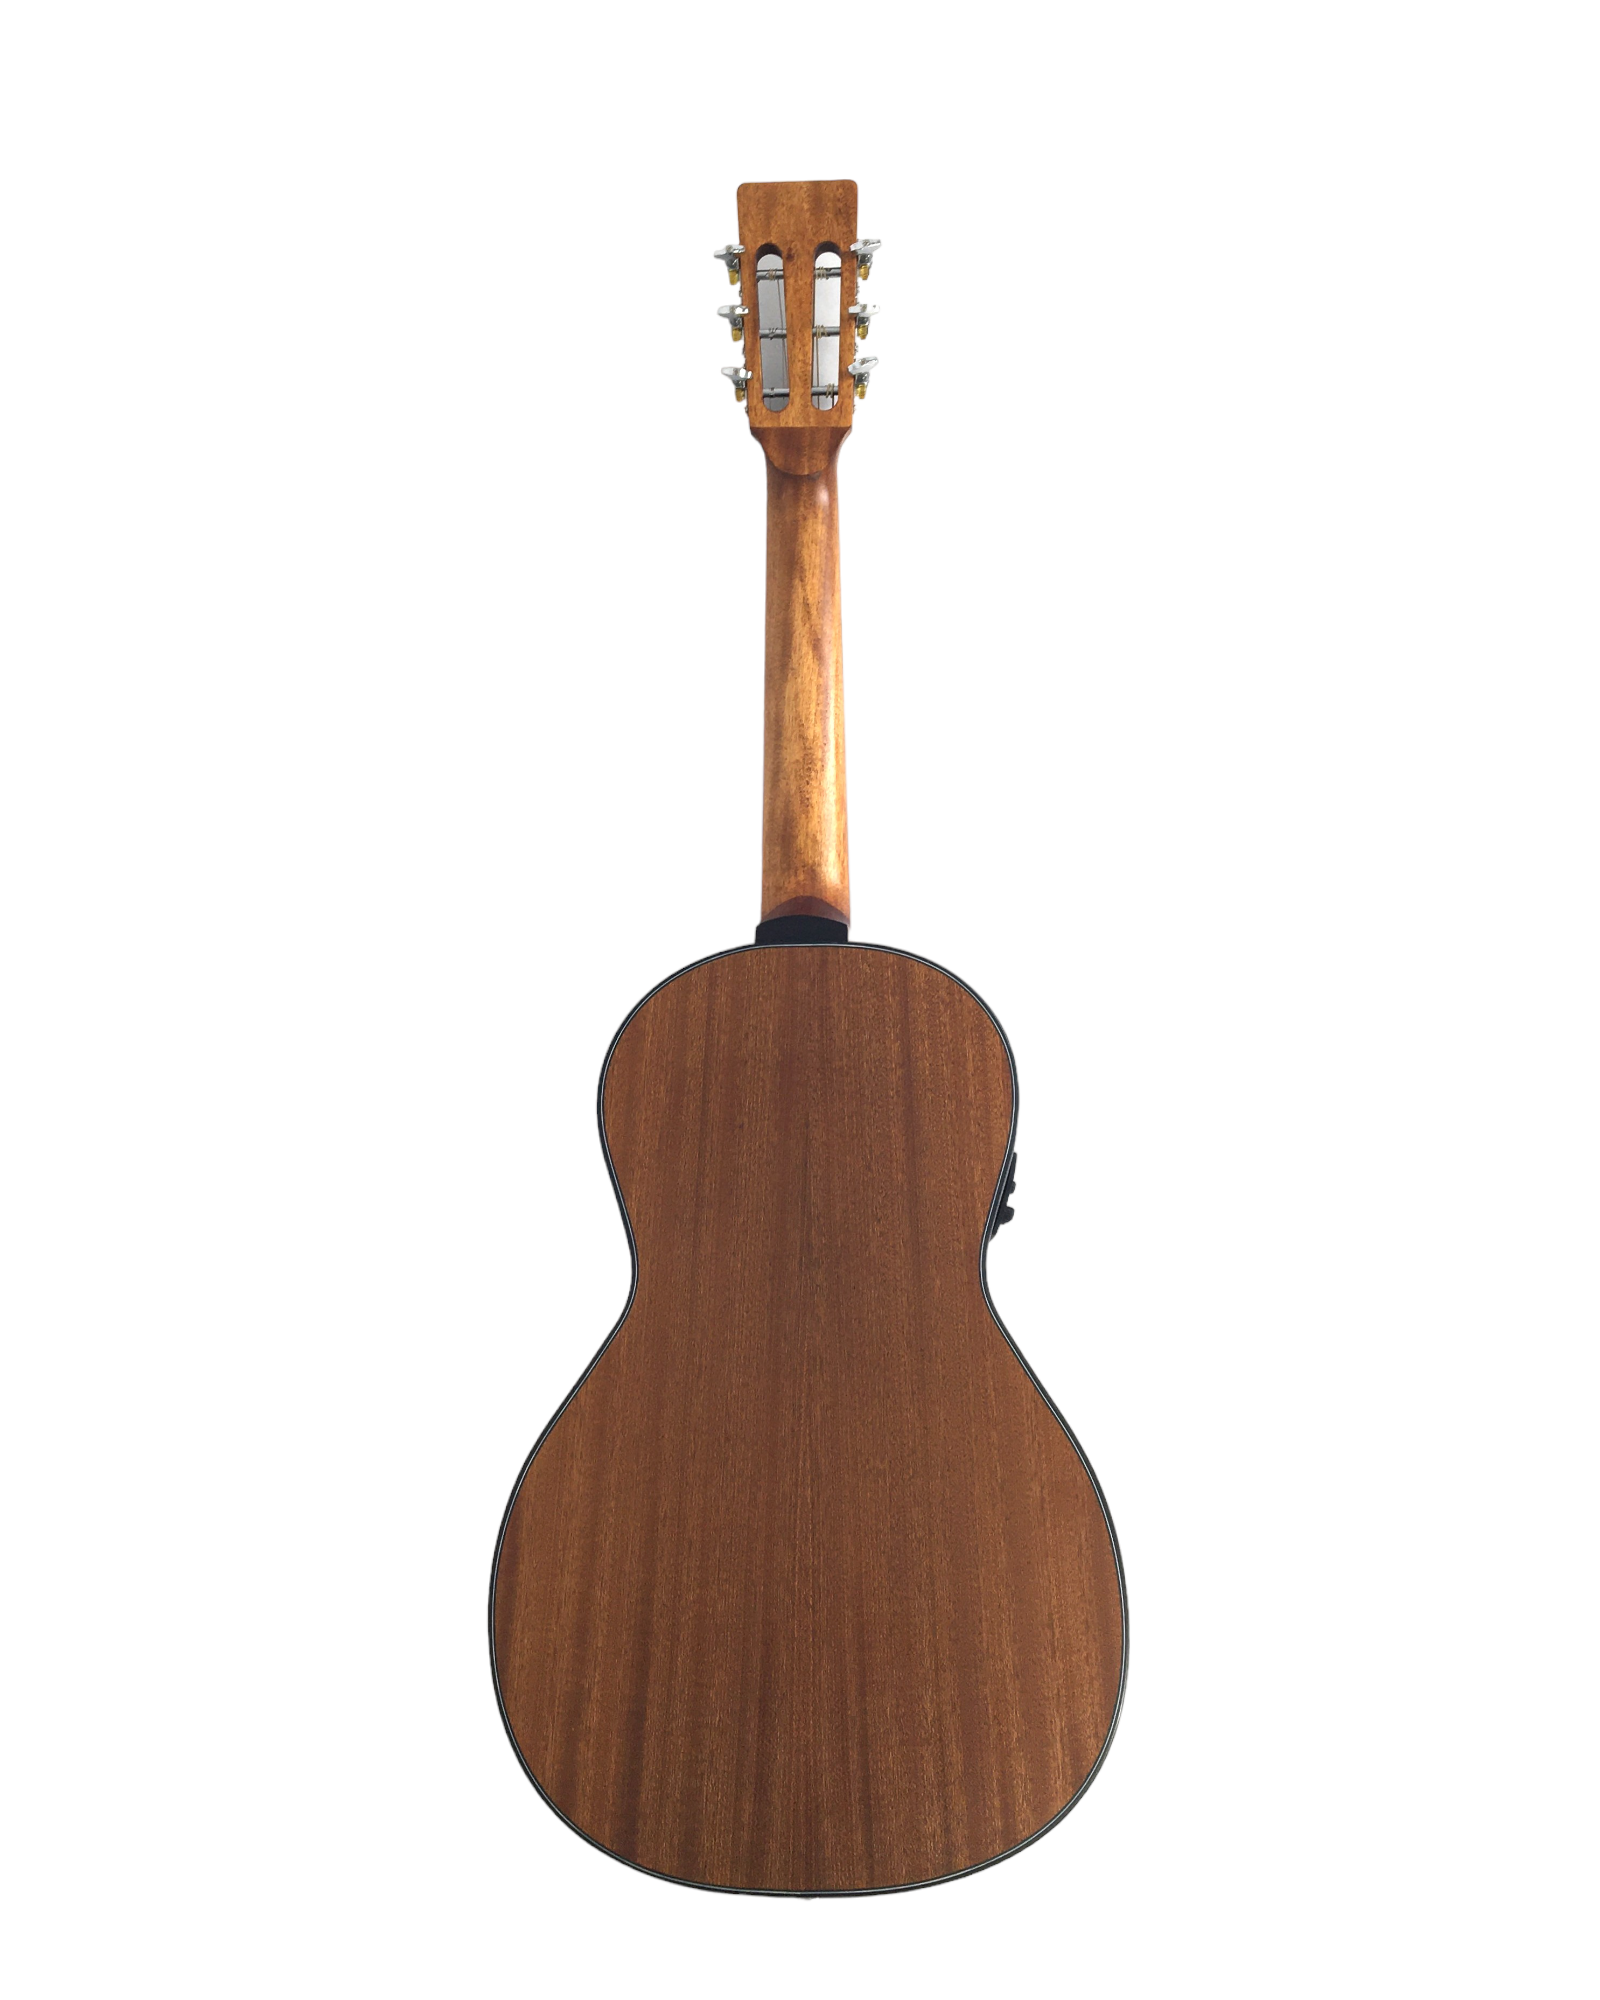 Caraya Parlor Cedar Top Built-In Pickups/Tuner Acoustic Guitar - Natur –  Kookaburra Music Tree